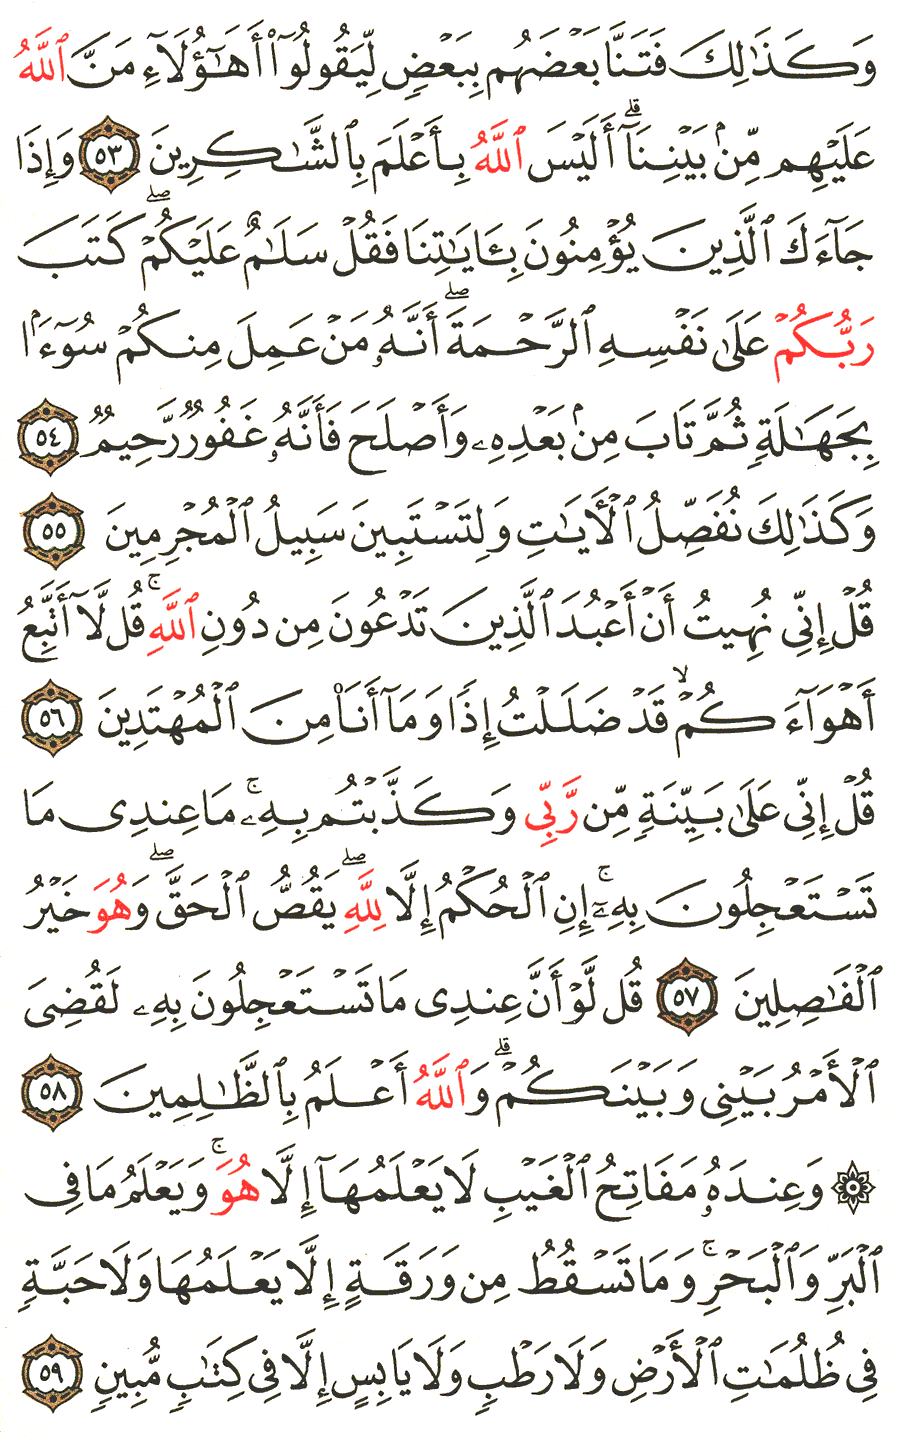 الصفحة 134 من القرآن الكريم